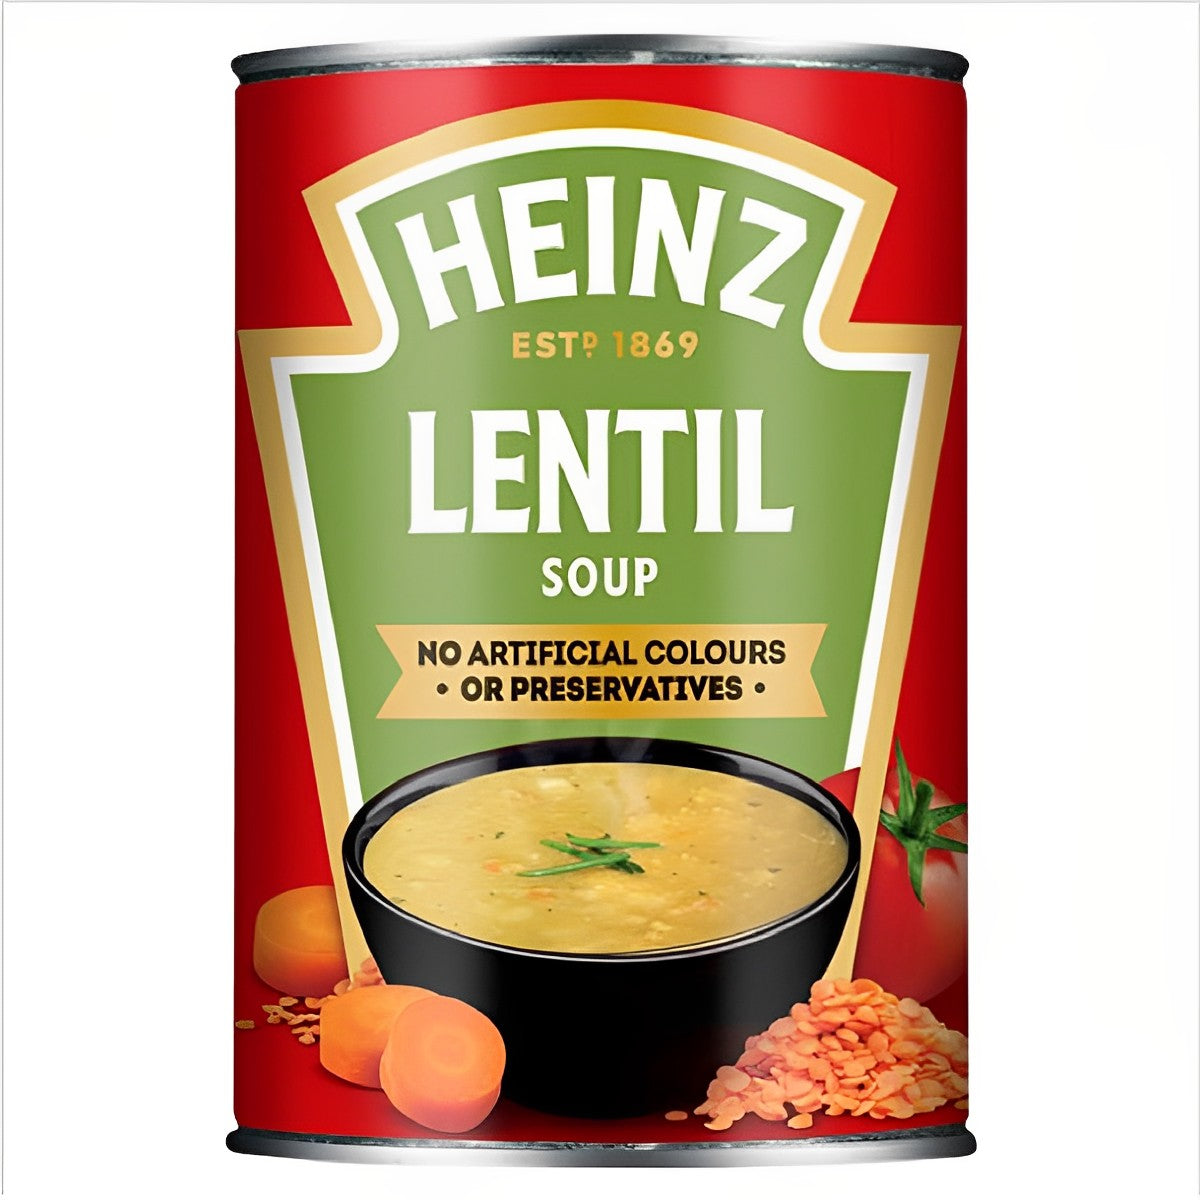 Heinz - Lentil Soup - 400g - Continental Food Store